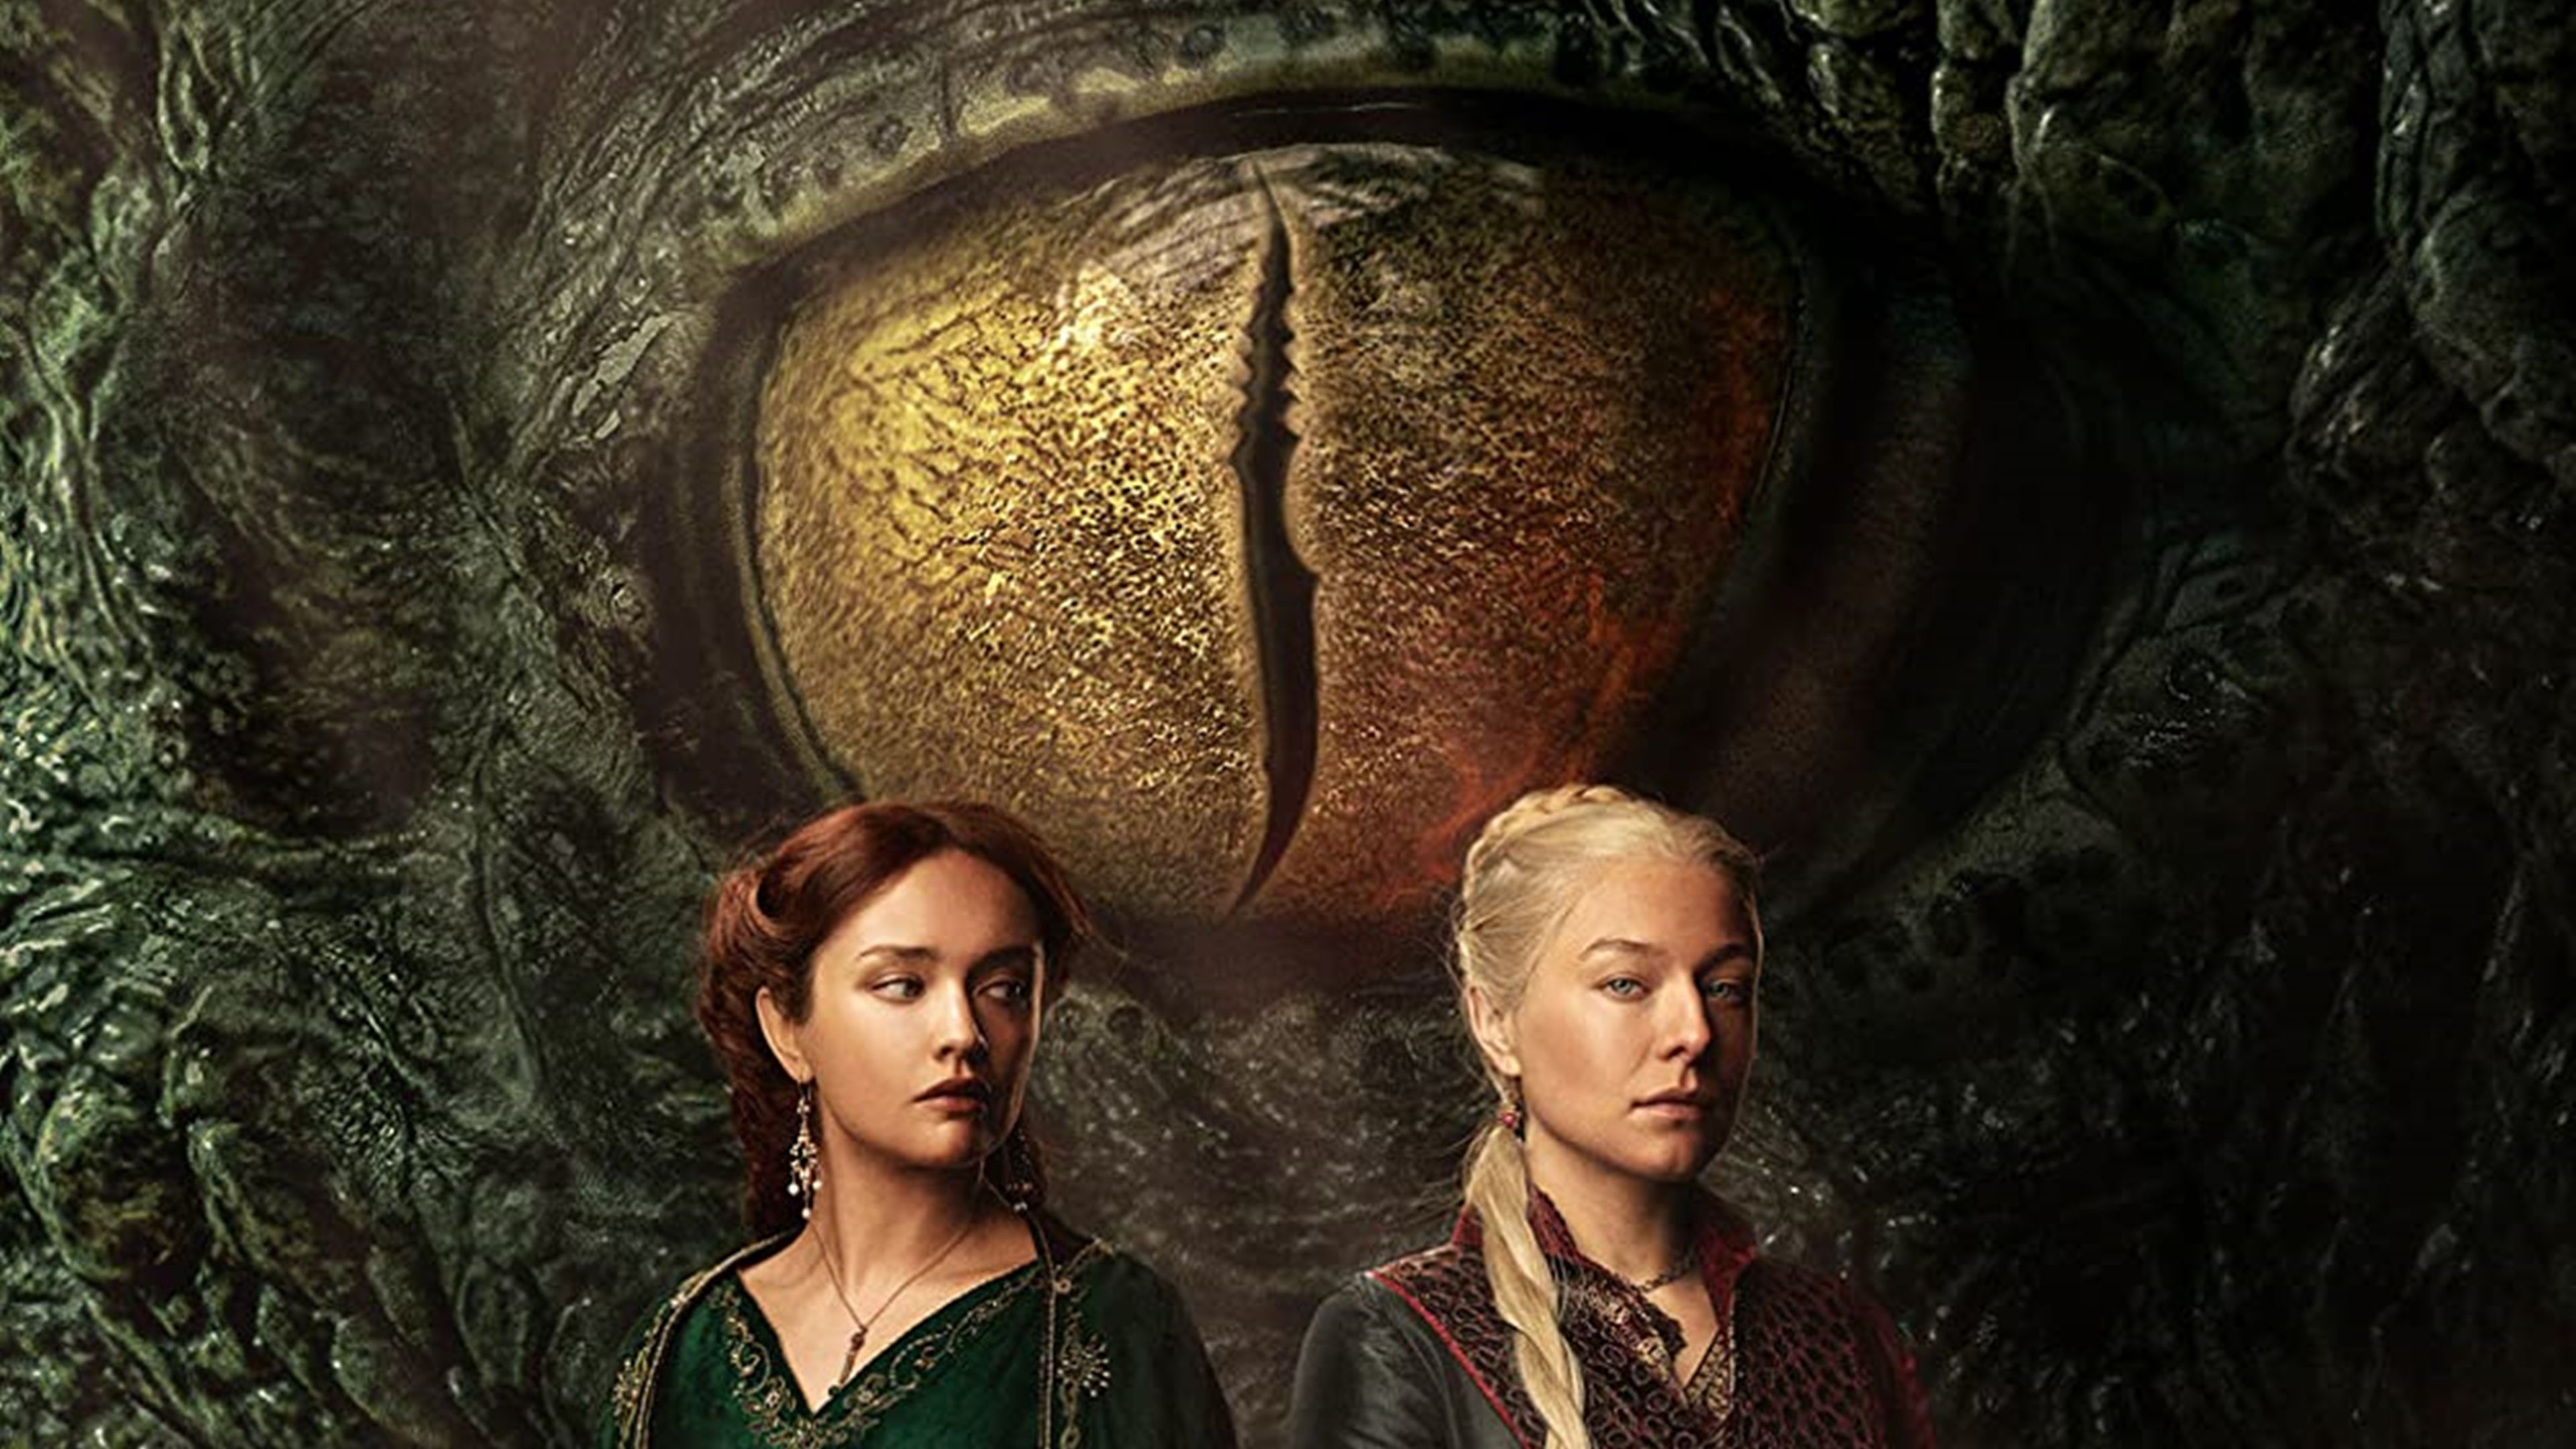 La casa del dragón' lanza el alucinante primer tráiler oficial de su  temporada 2 en HBO Max